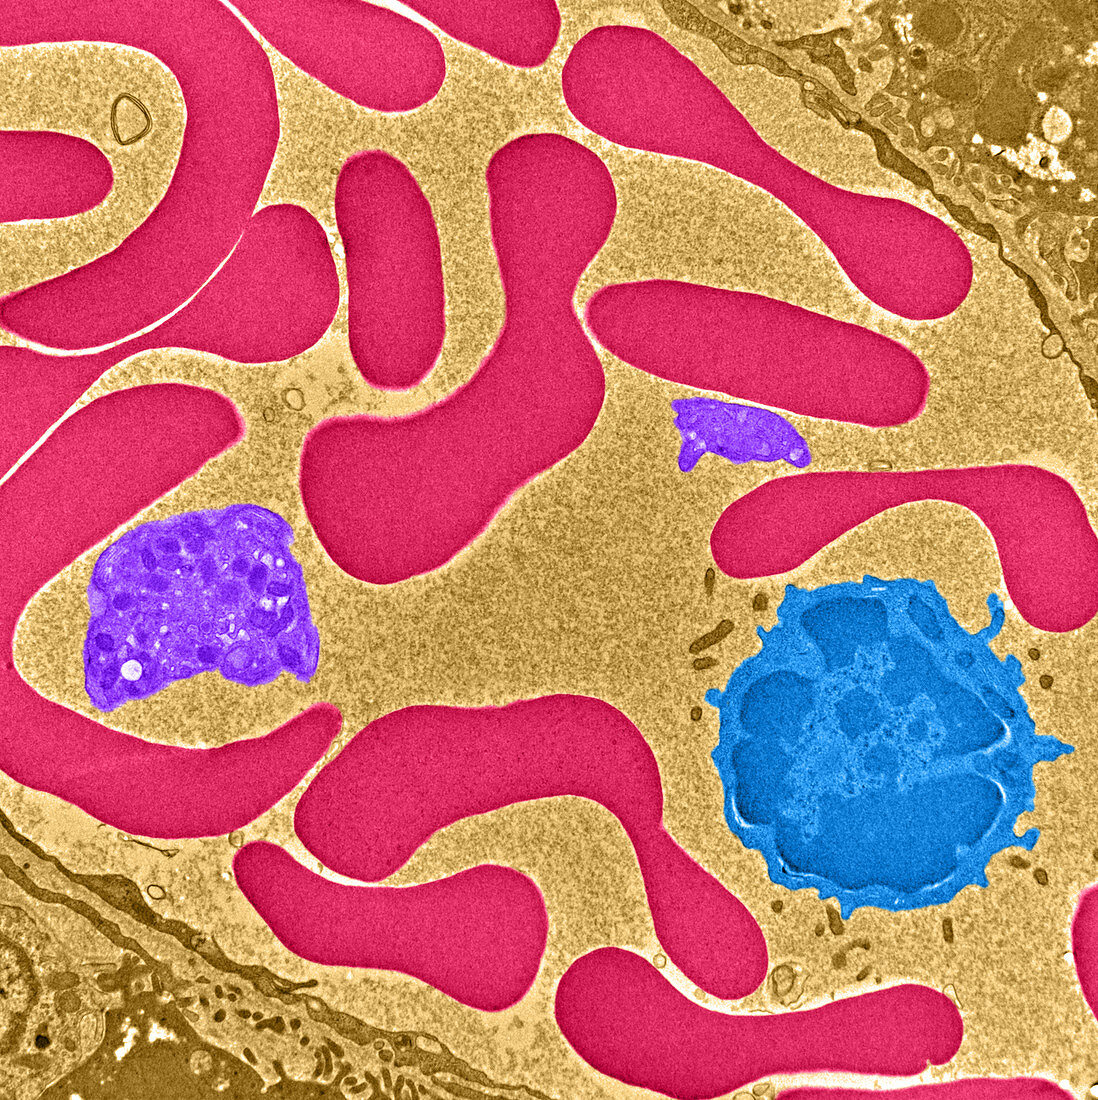 Erythrocytes,Platelet and Lymphocyte